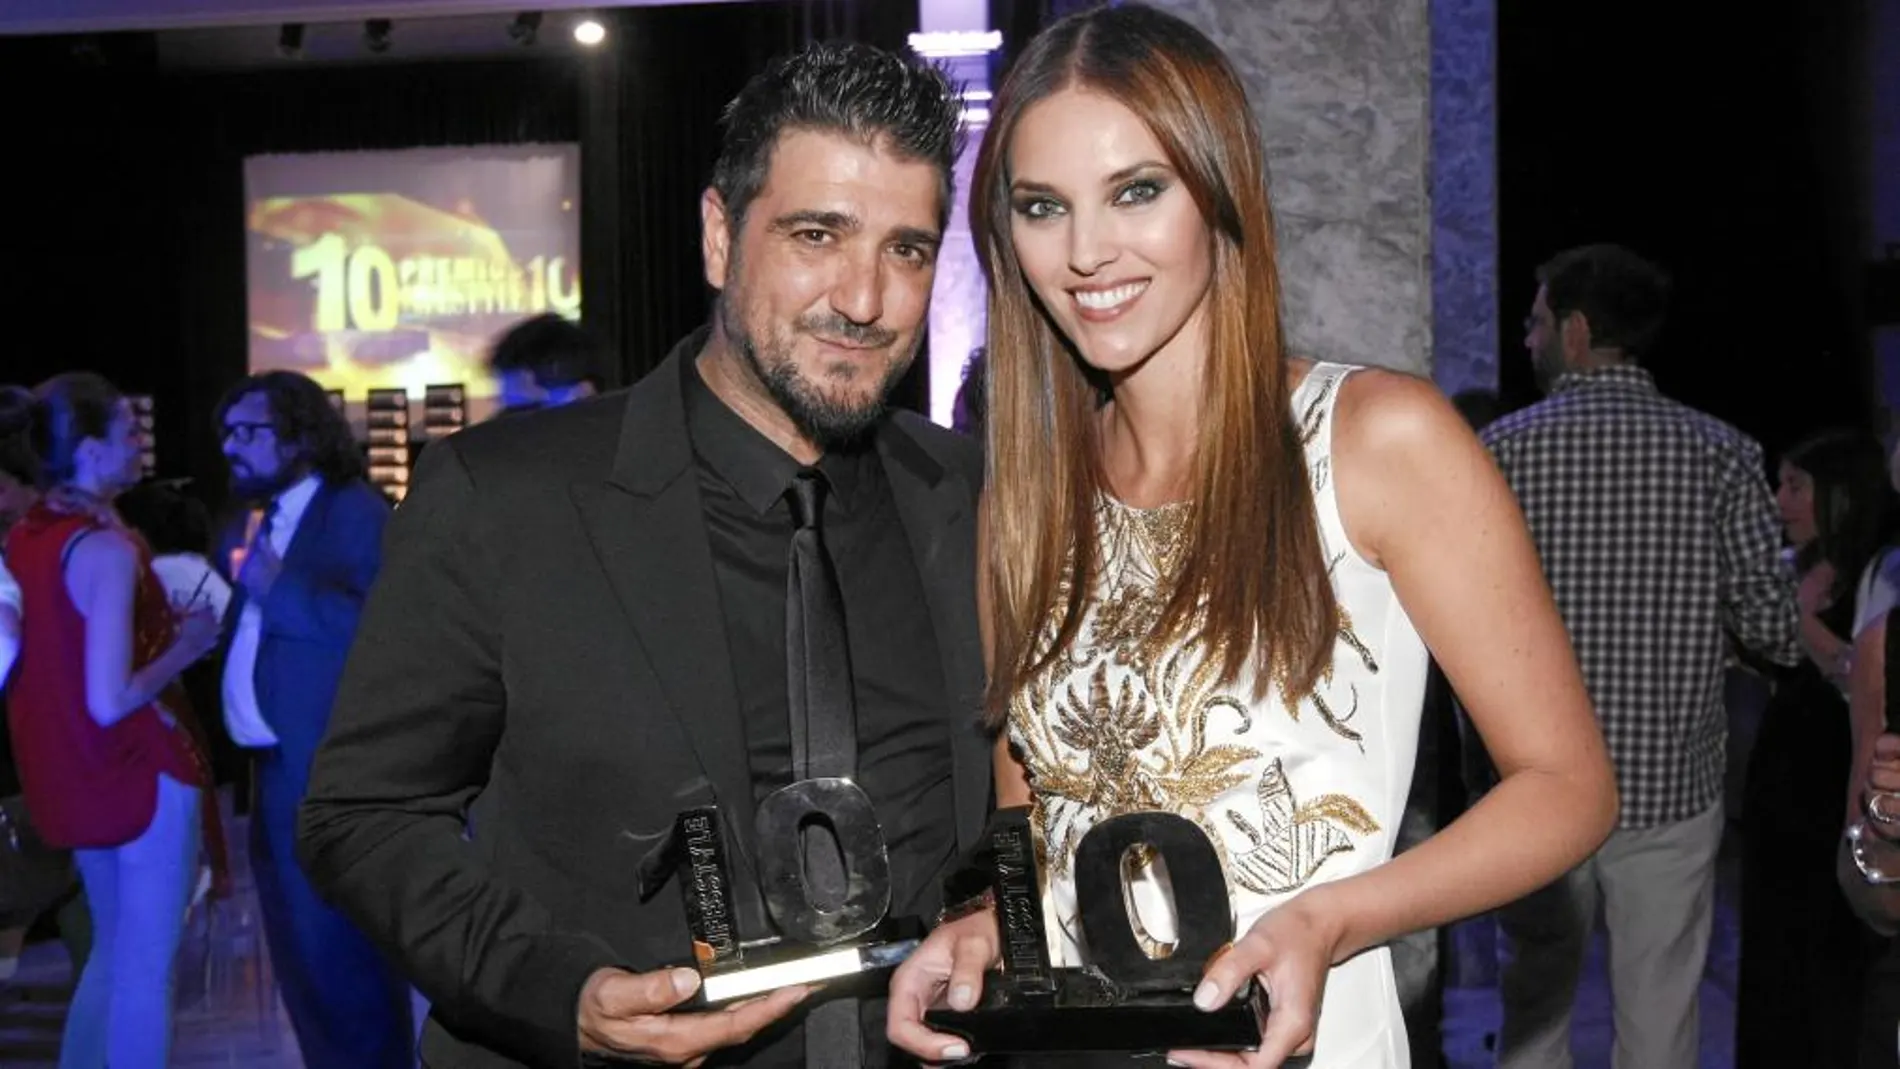 Antonio Orozco recibió el Premio 10 a la Música, mientras que Helen Lindes el correspondiente a la moda